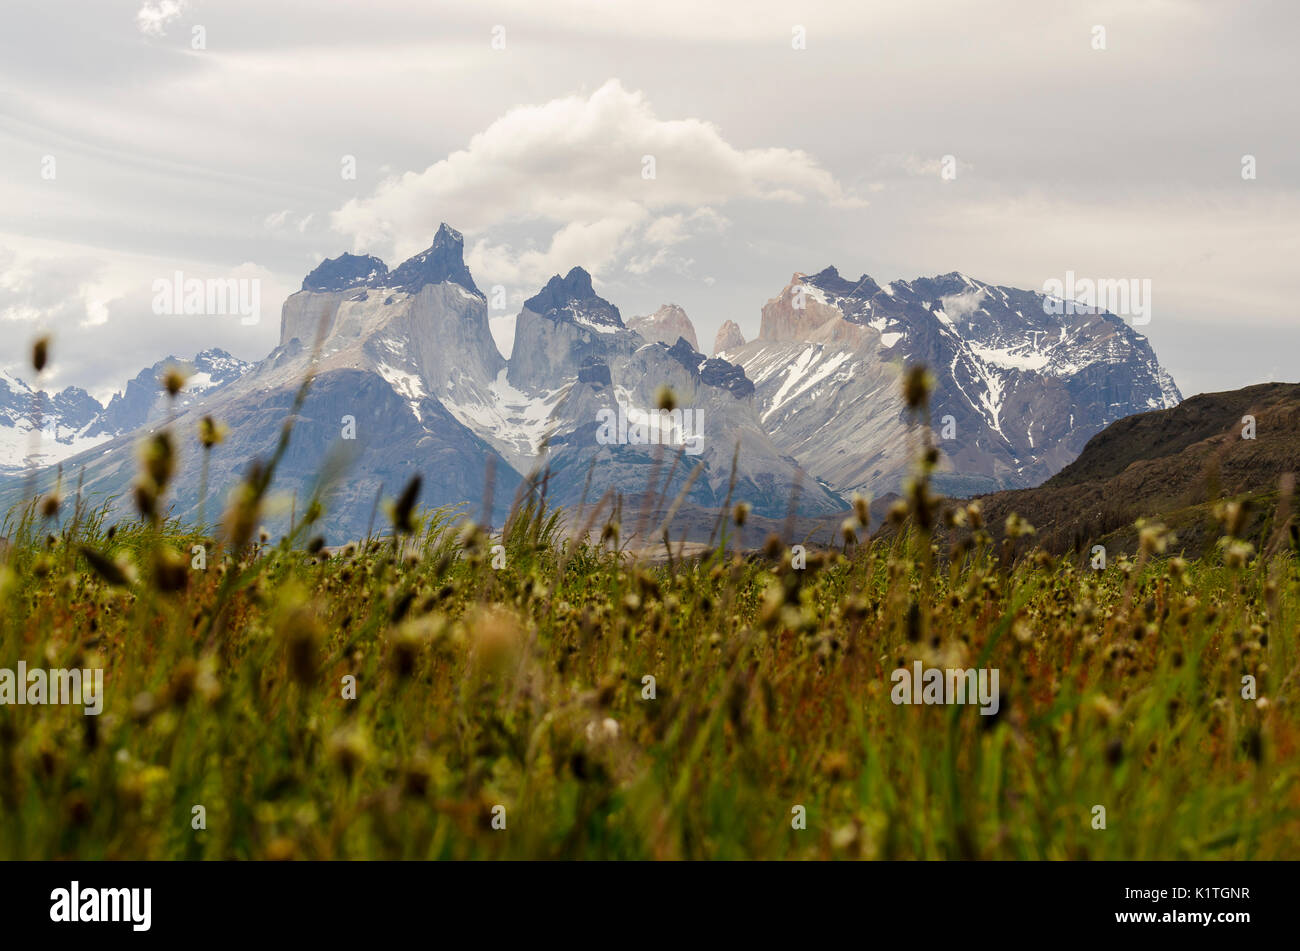 Torres del Paine National park, Patagonia, Chile. Primavera en Parque Nacional Torres del Paine en Chile. Región de Magallanes. Stock Photo